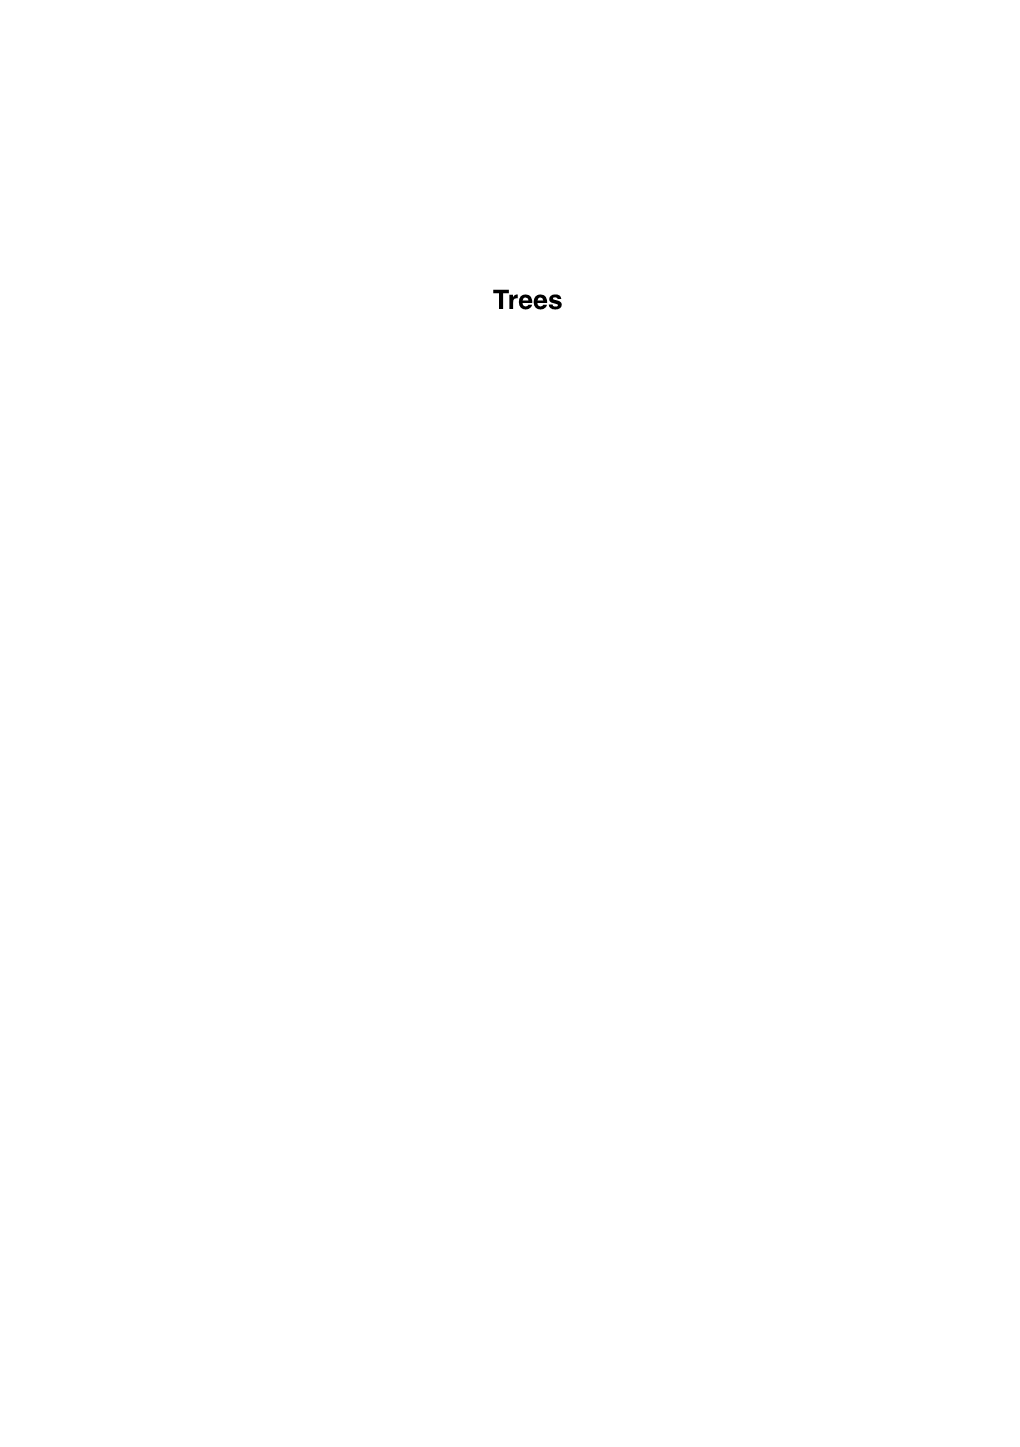 Trees Catalogo.Pdf